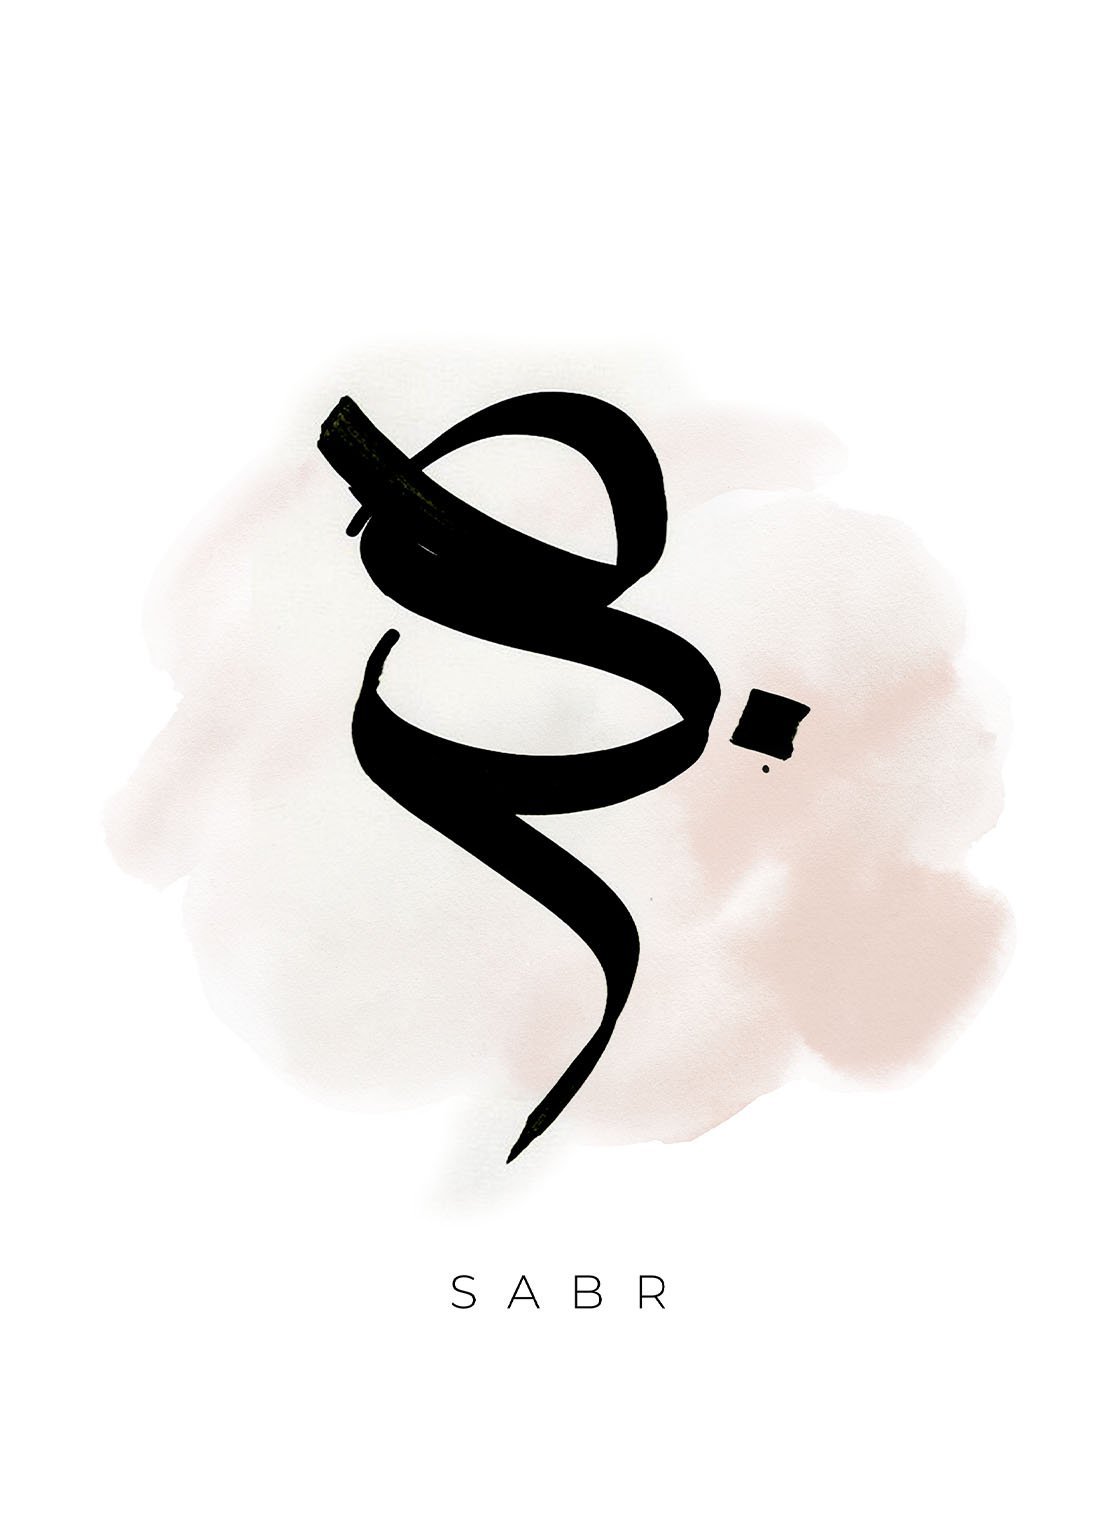 Sabr Brushed - Avemfactory